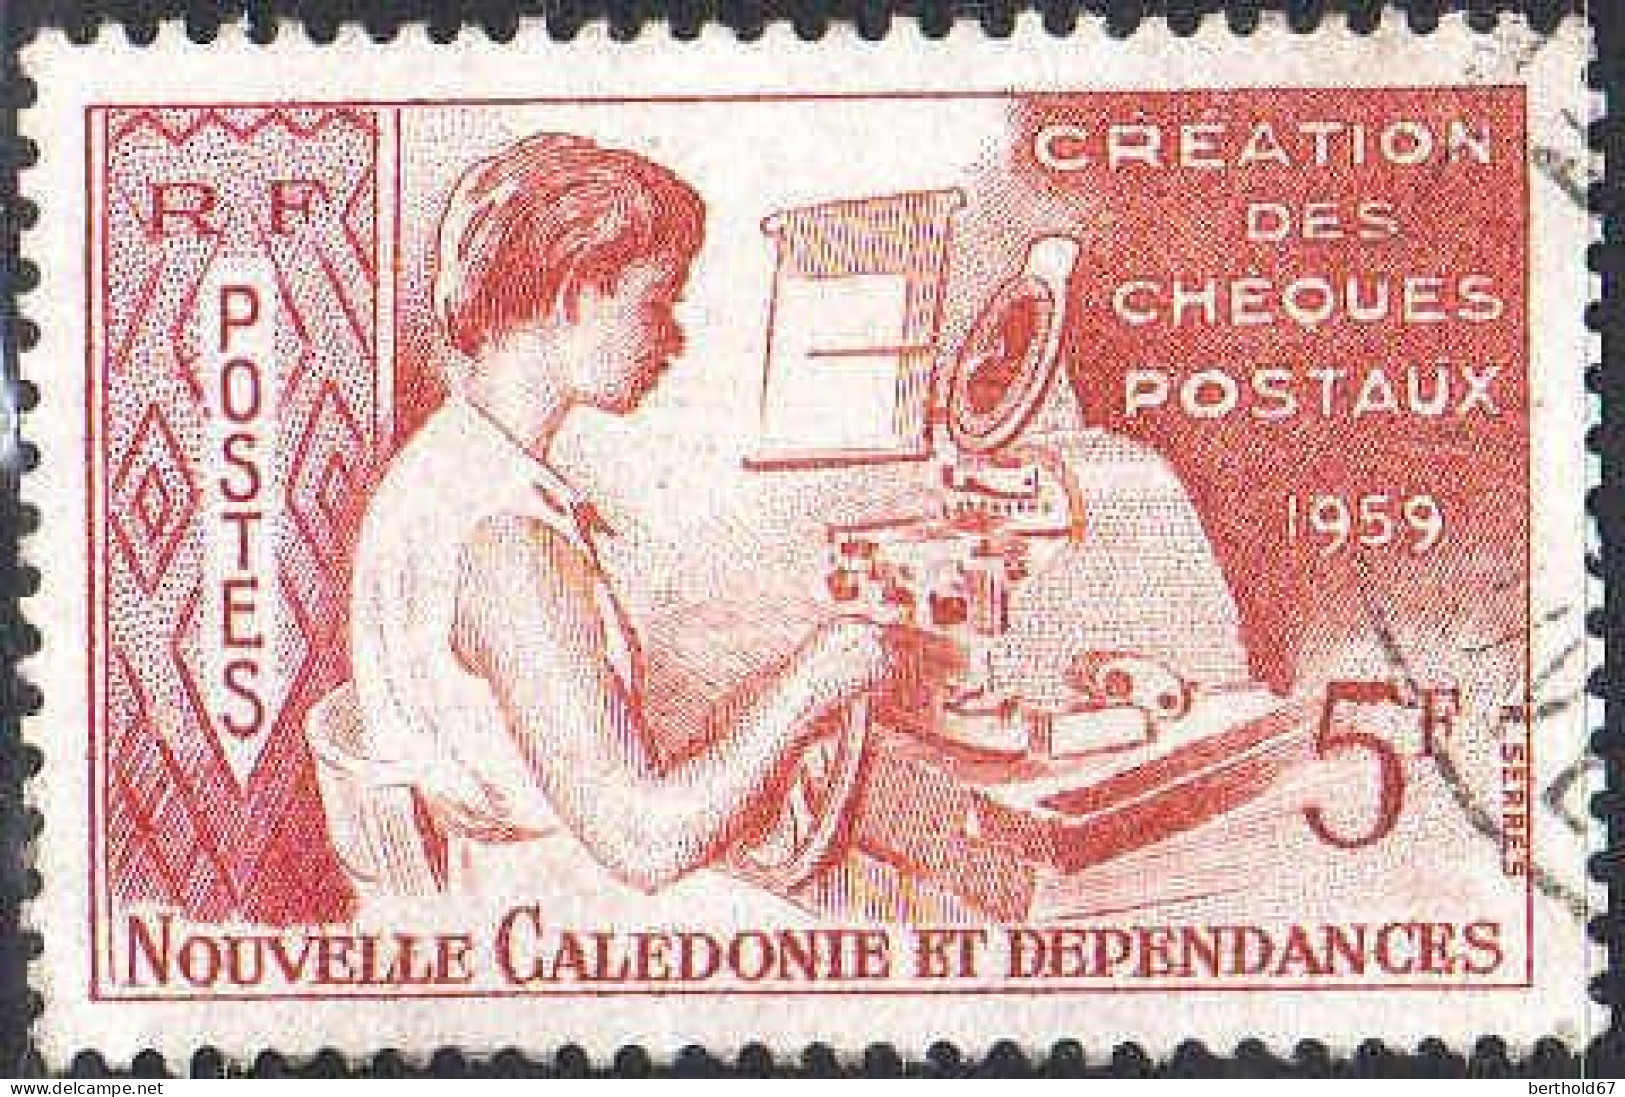 Nle-Calédonie Poste Obl Yv: 296 Mi:371 Création Des Cheques Postaux (Beau Cachet Rond) - Oblitérés